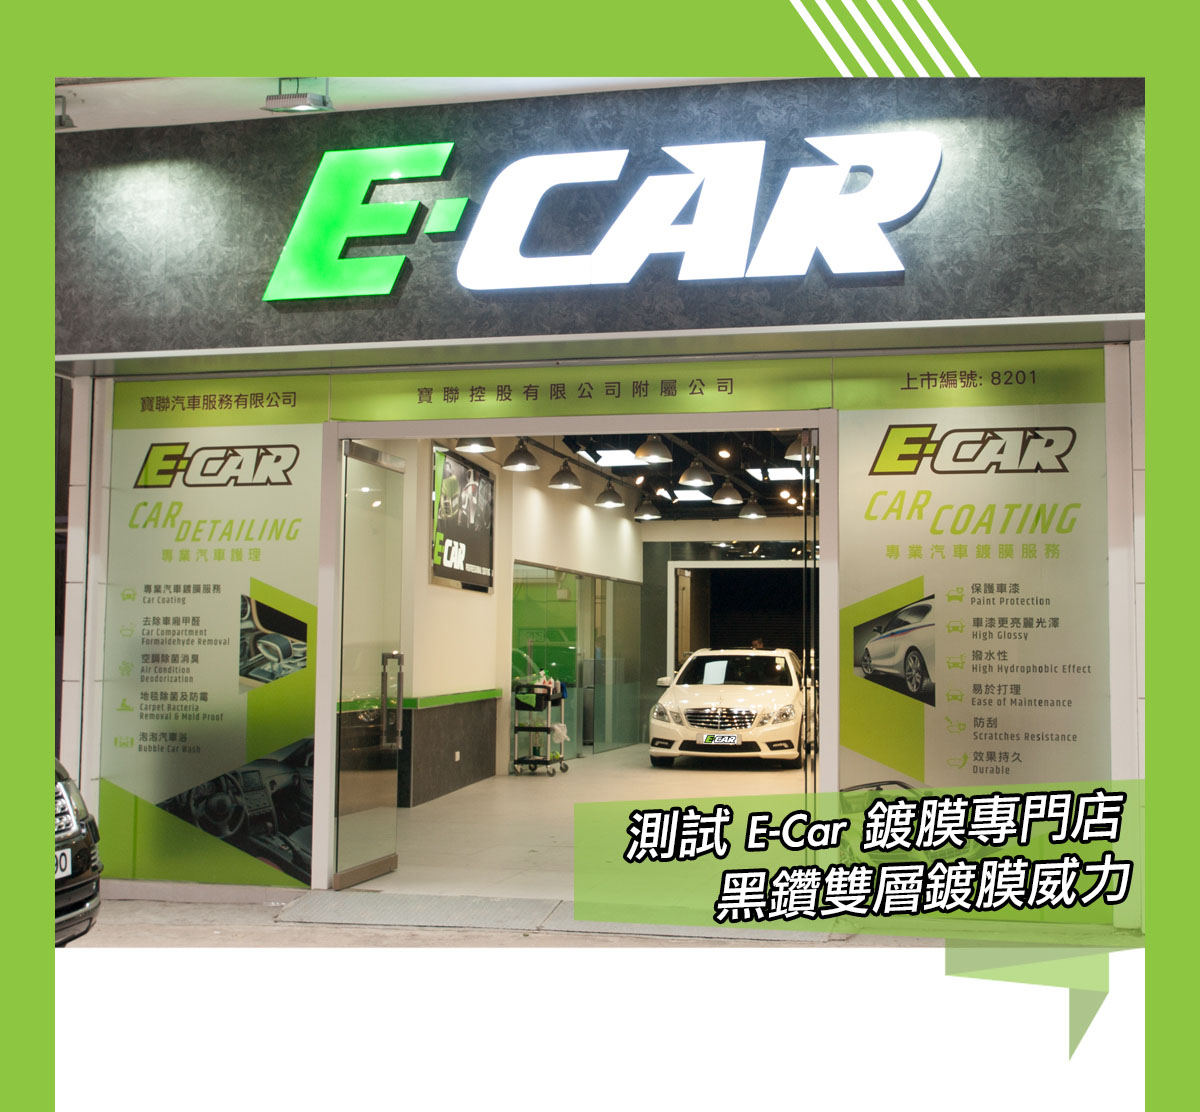 測試 E-Car 鍍膜專門店黑鑽雙層鍍膜威力